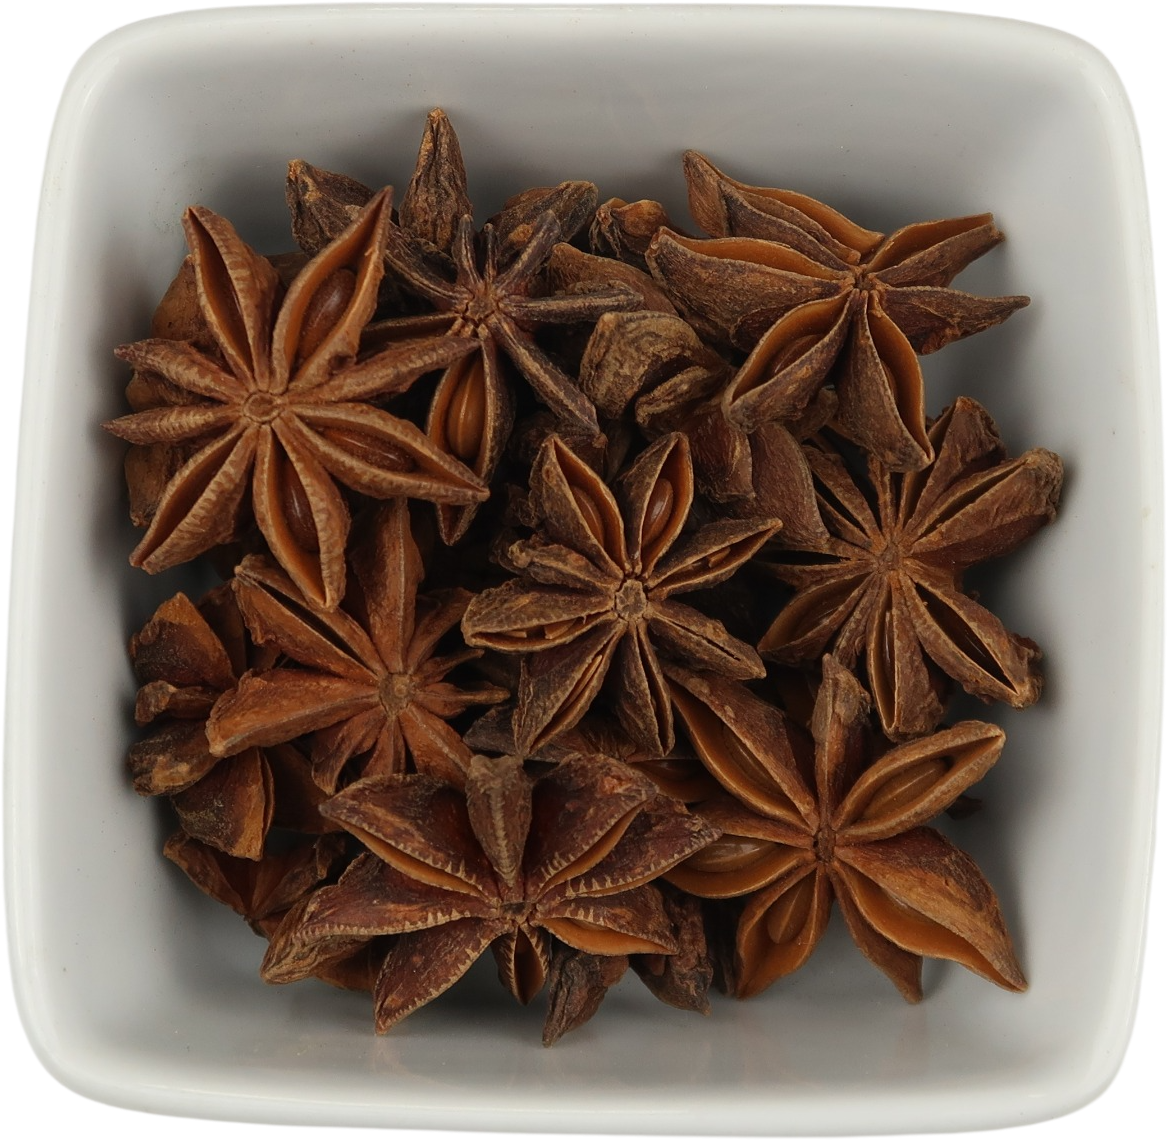 Organic Star Anise, Whole (Illicium Verum)